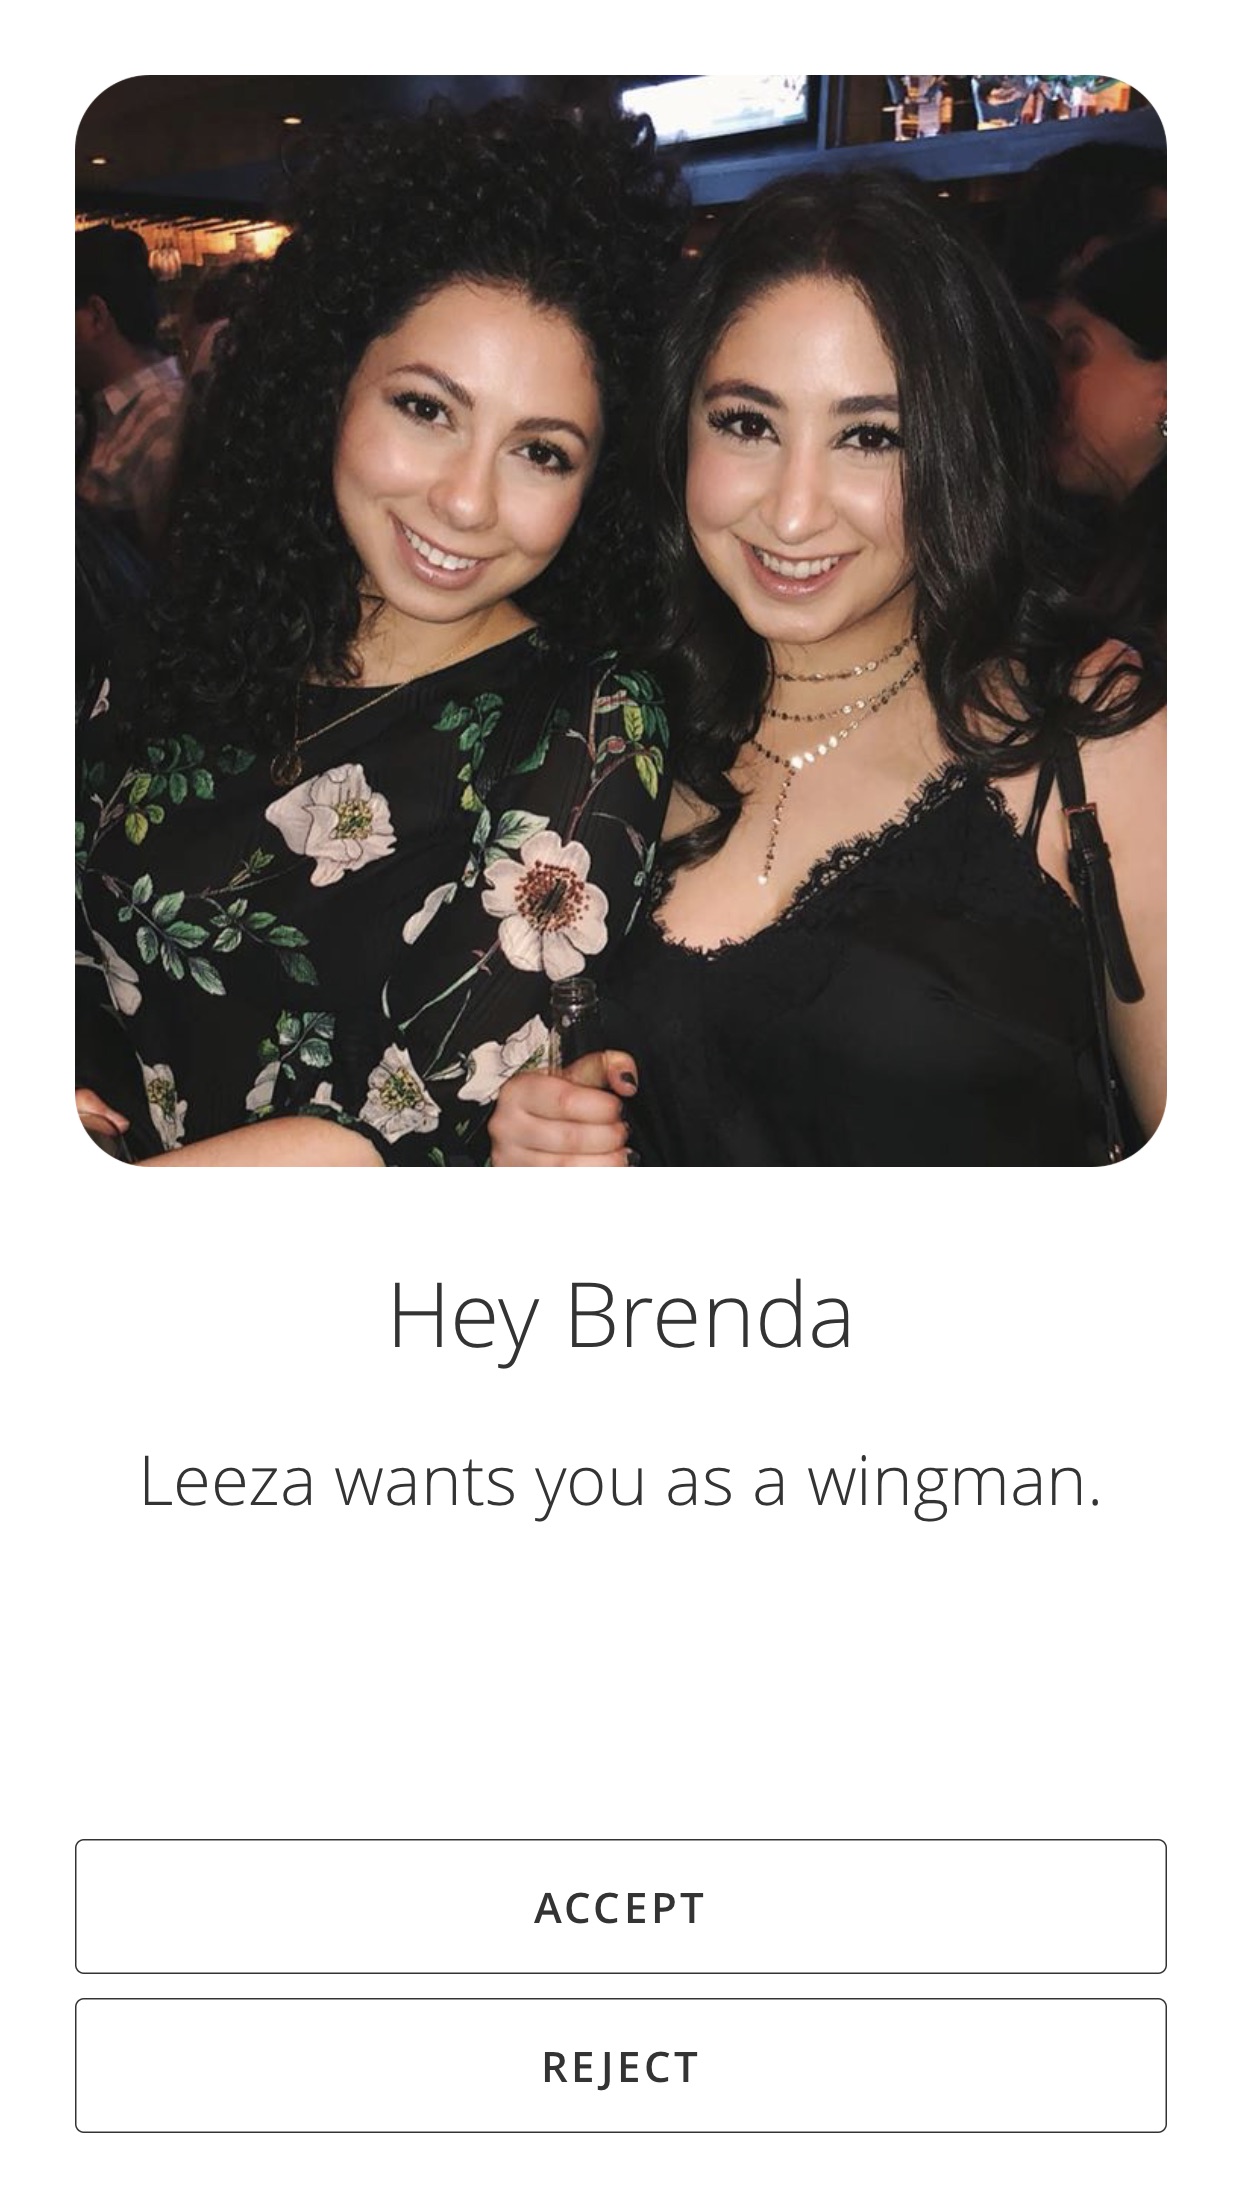 wingman dating app review